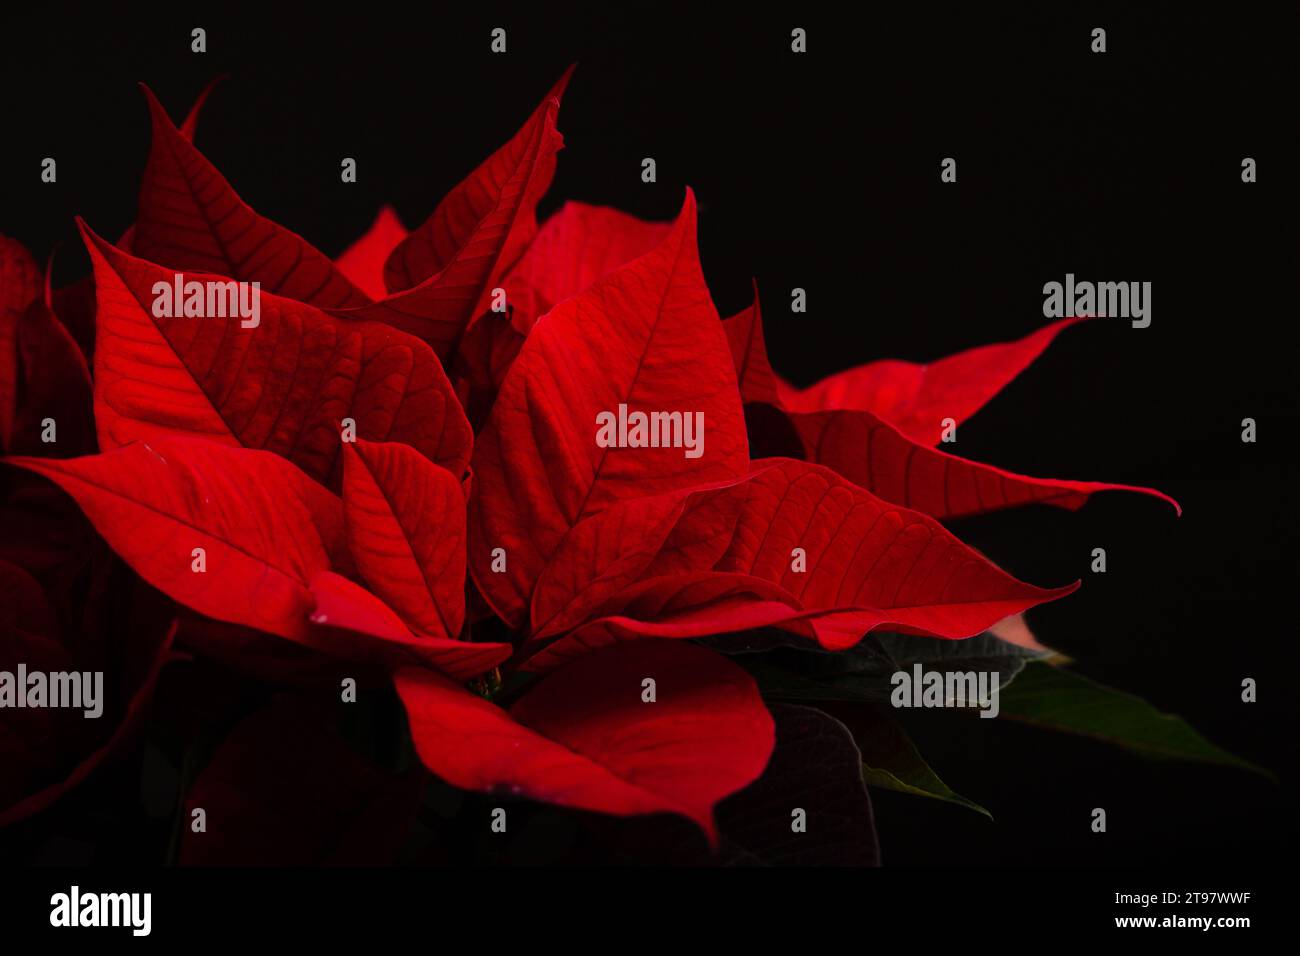 rosso poinsettia fiore primo piano su sfondo scuro, inverno natale concetto Foto Stock